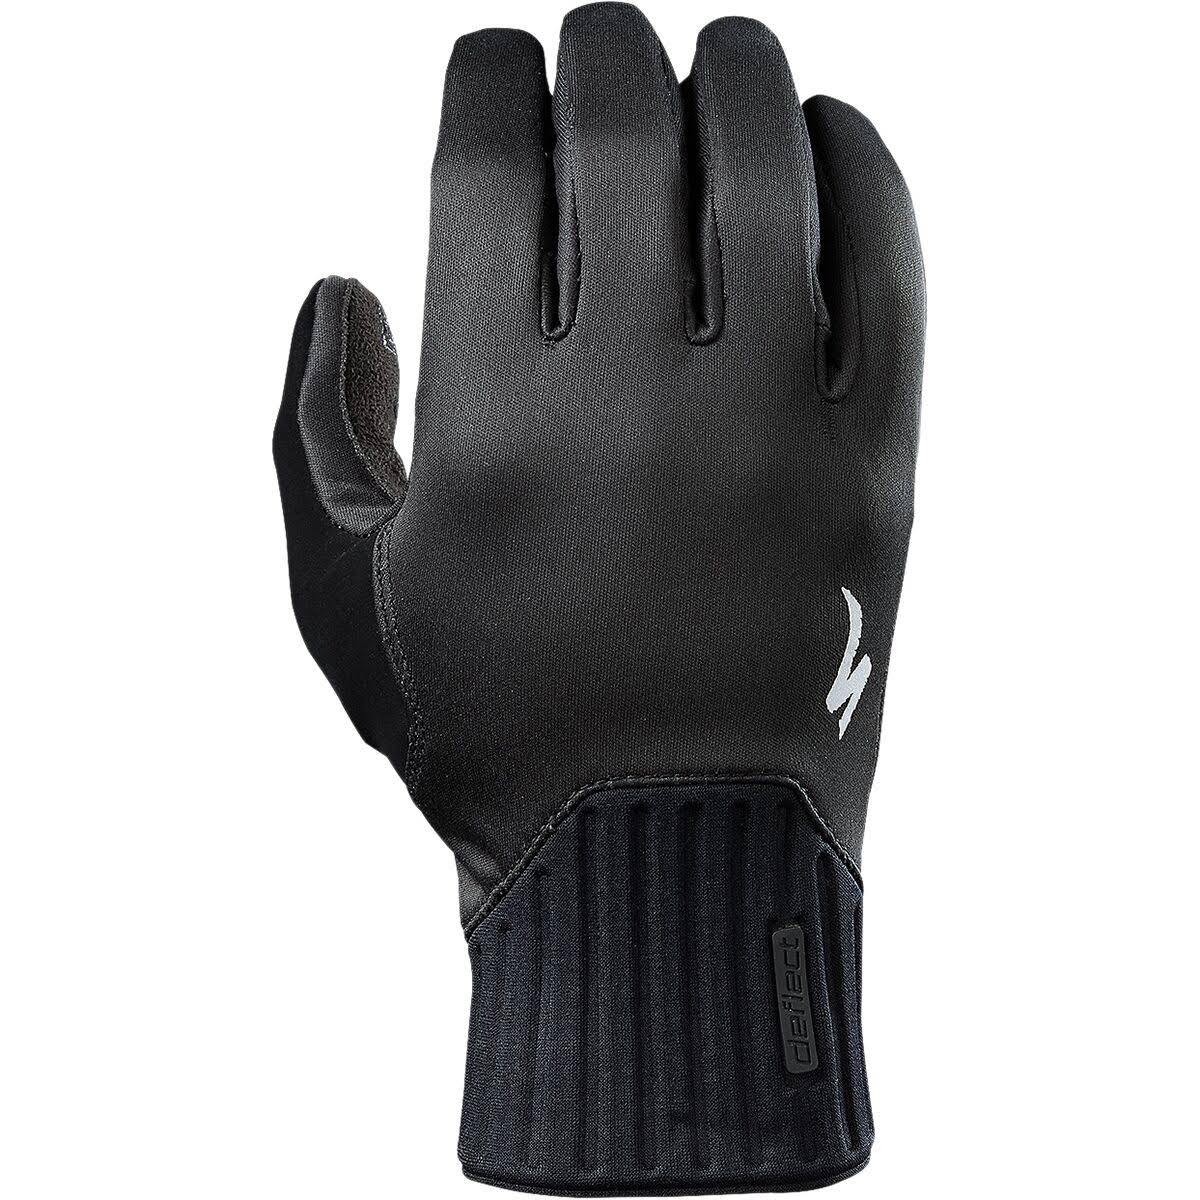 Specialized Deflect Glove Black, XXL